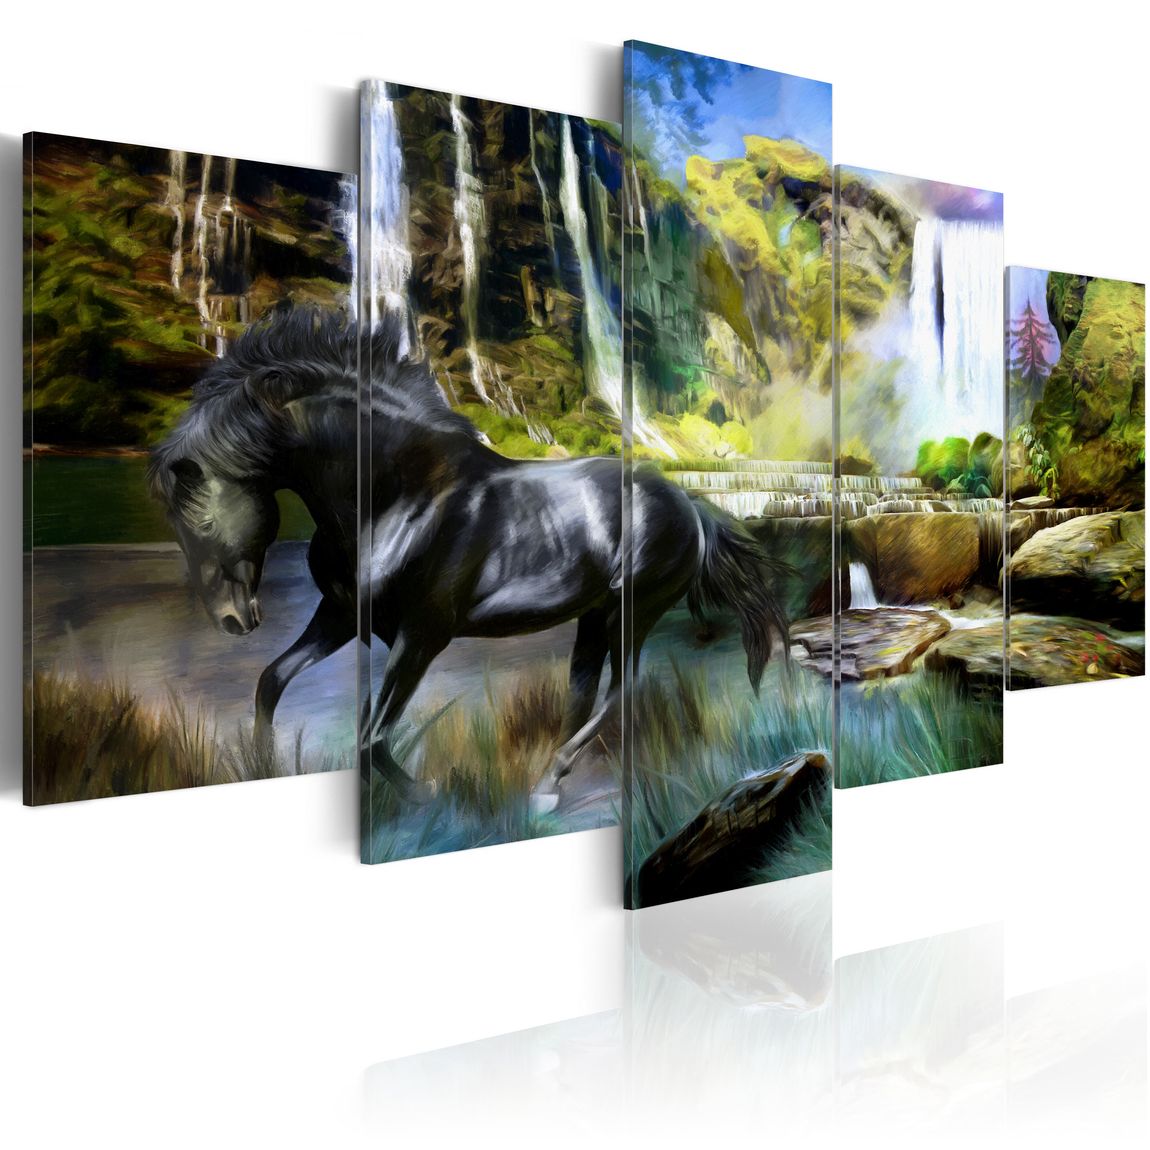 Wandbild - Schwares Pferd vor paradisischem Wasserfall